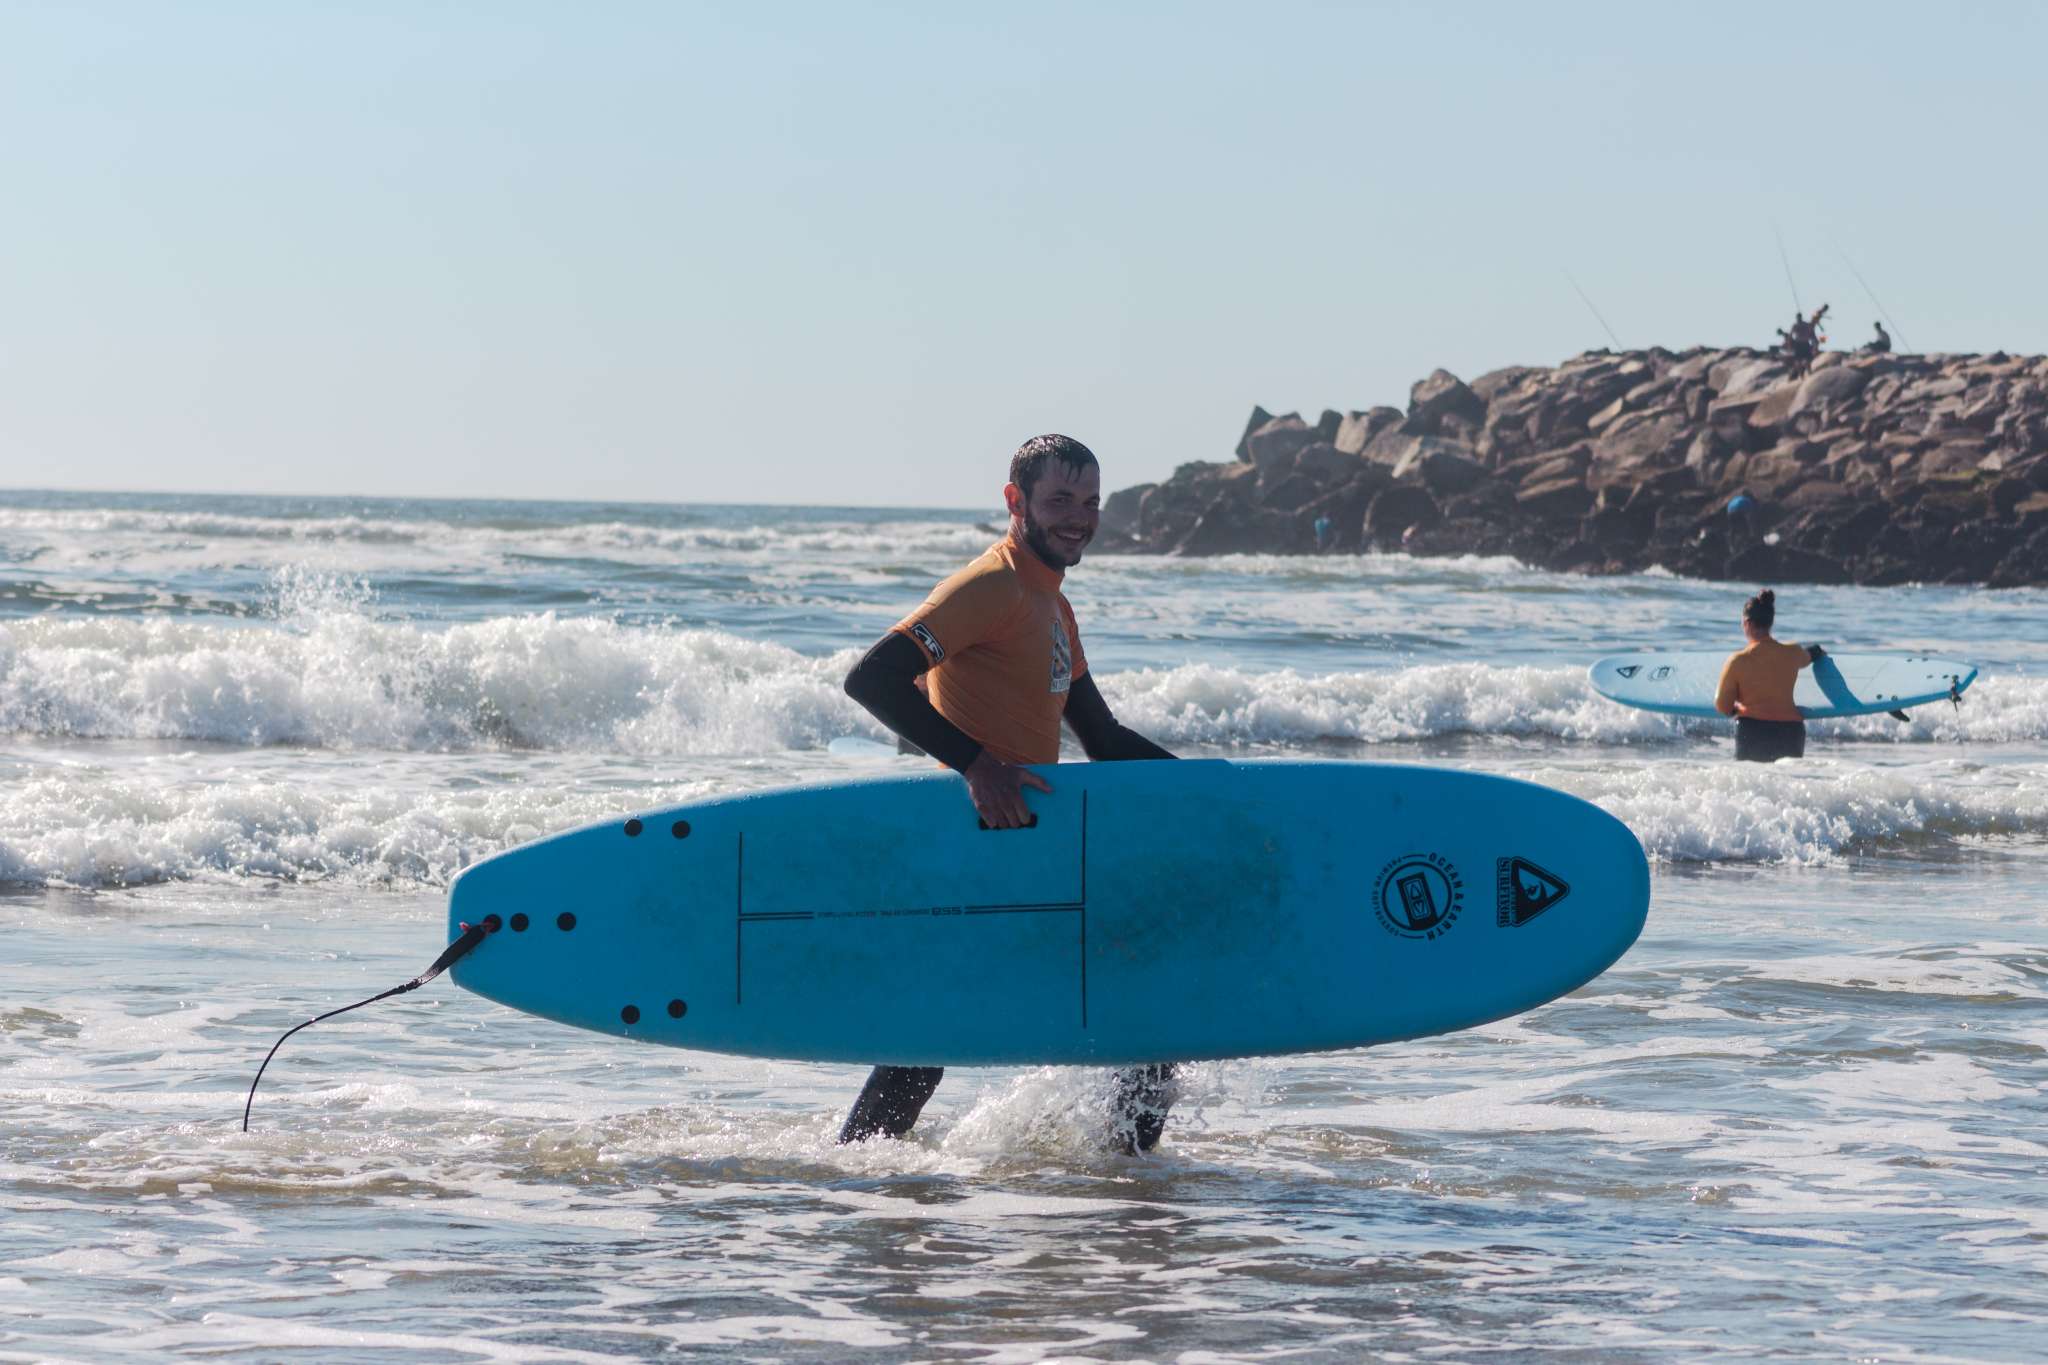 Softboard Surfboard